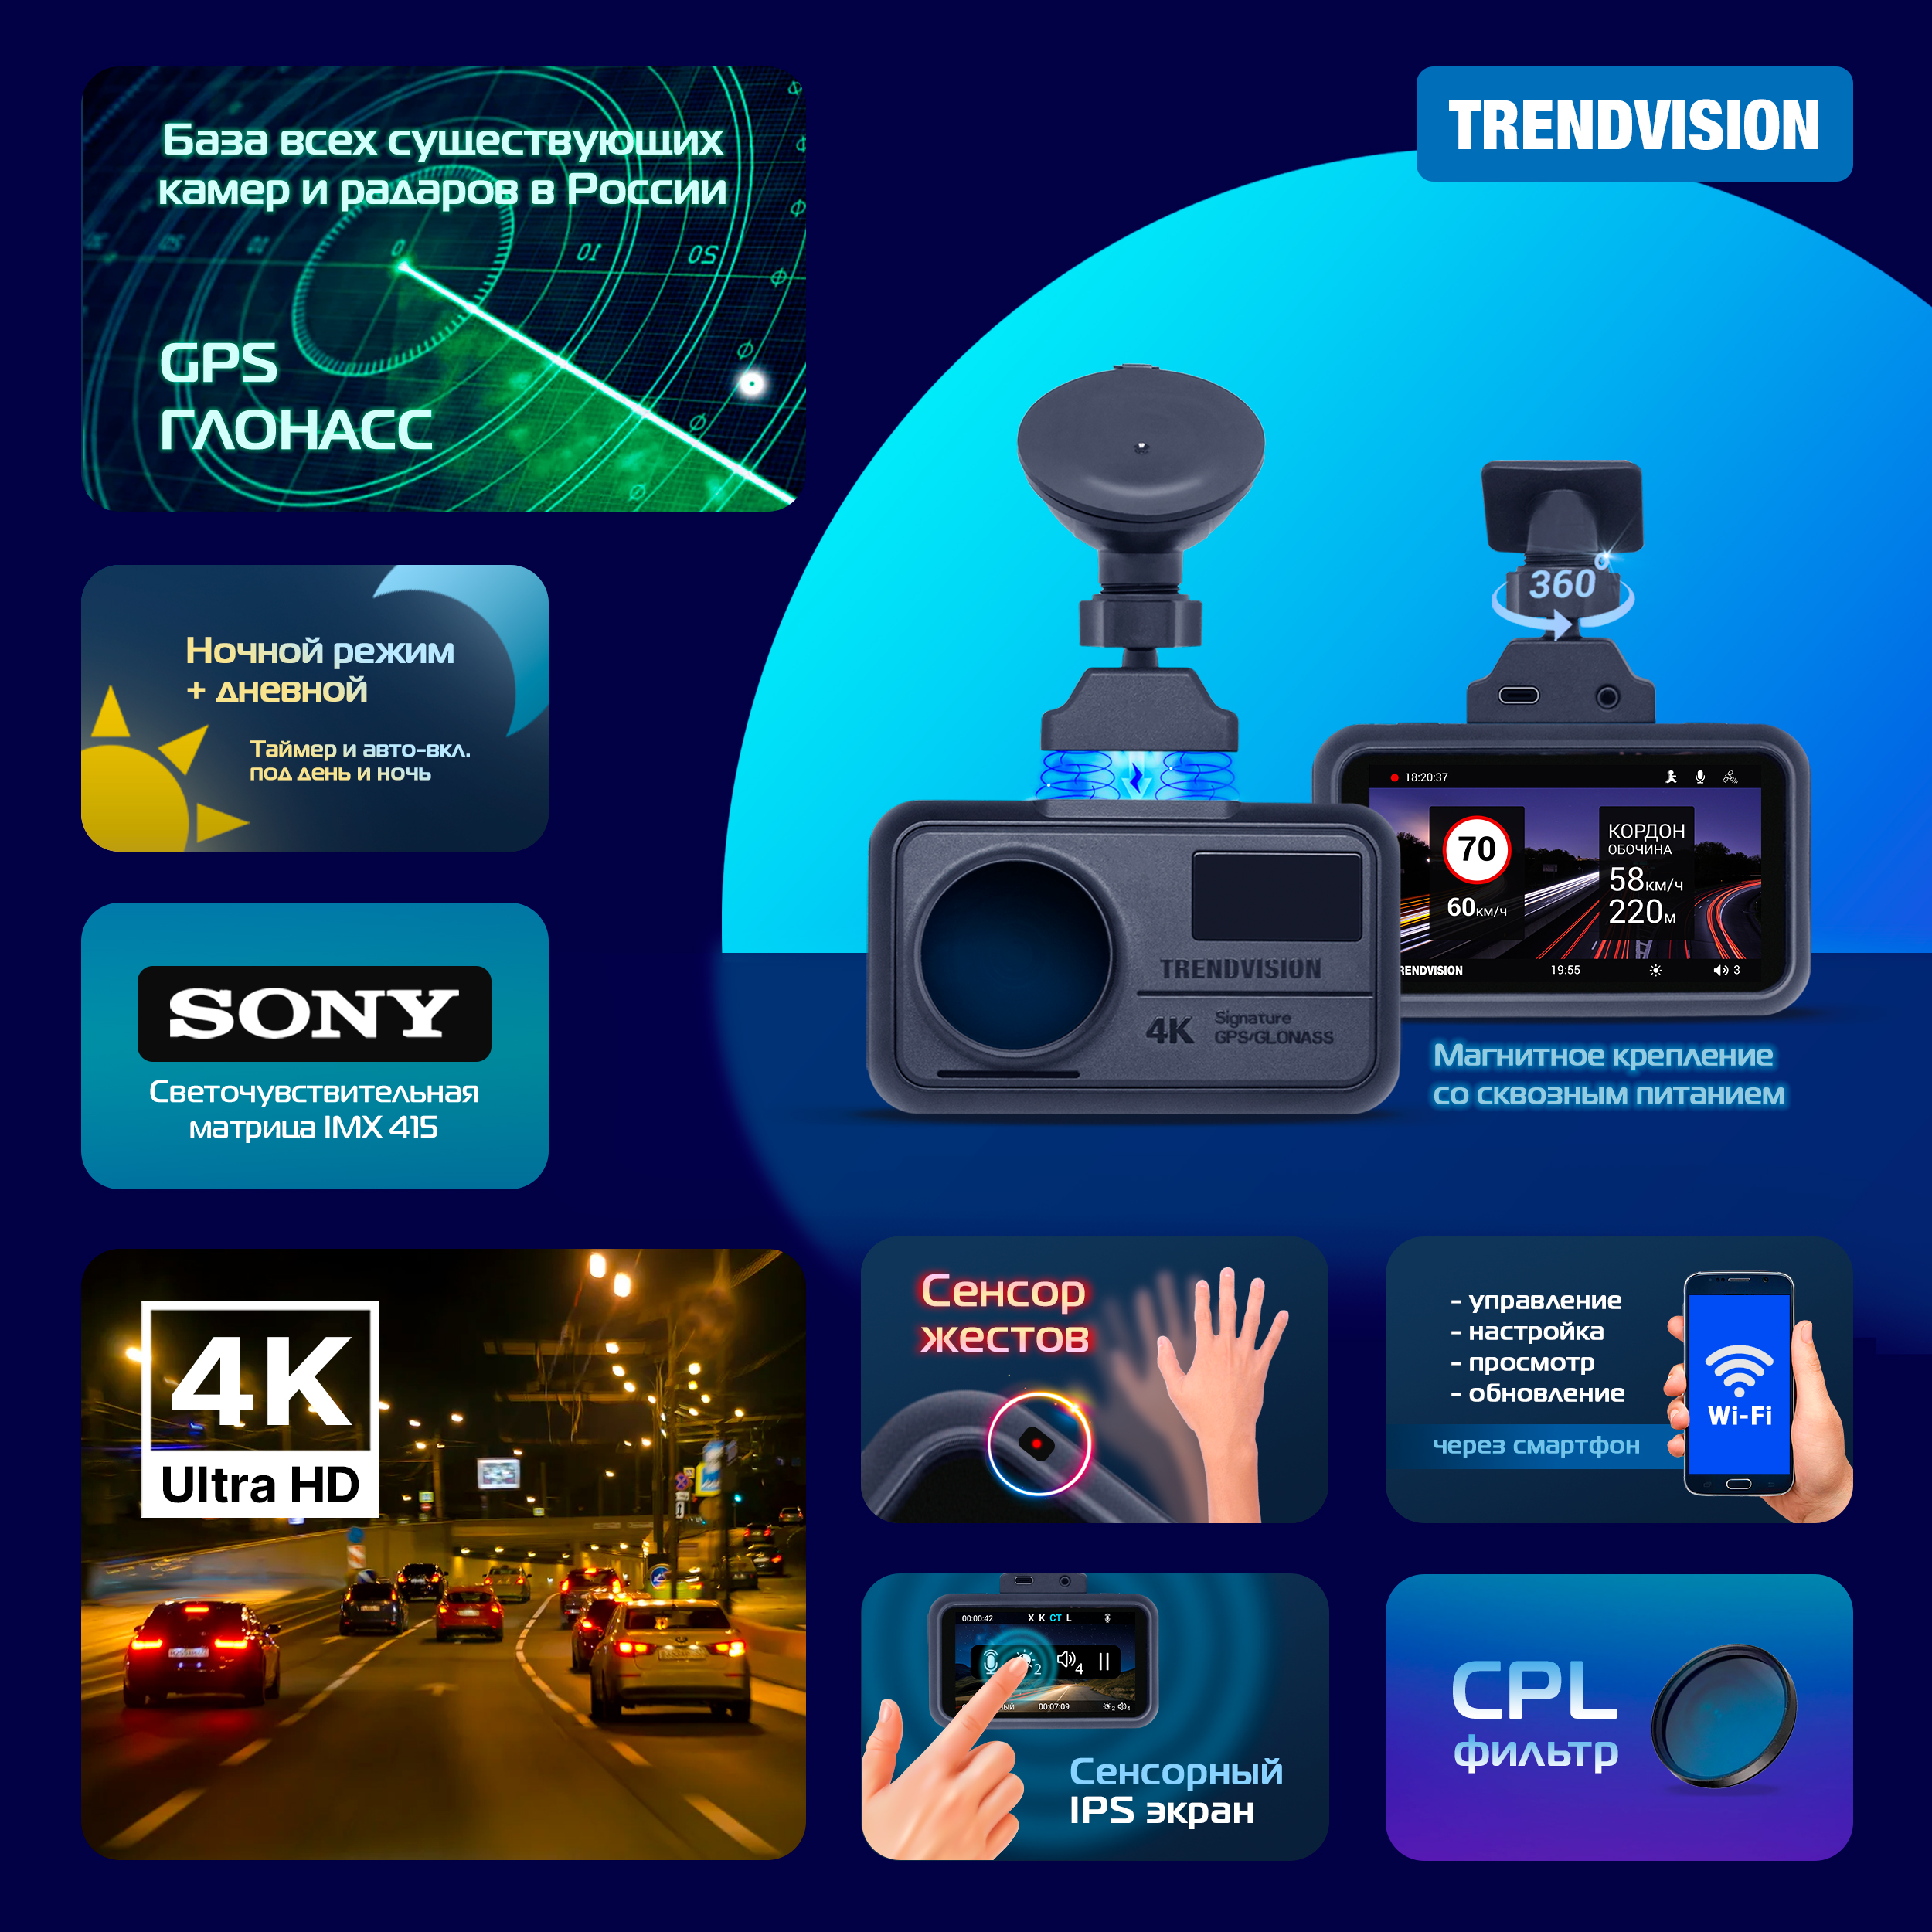 Видеорегистратор TrendVision Solo - 4К (SONY), сенсоры, GPS, CPL, Wi-Fi